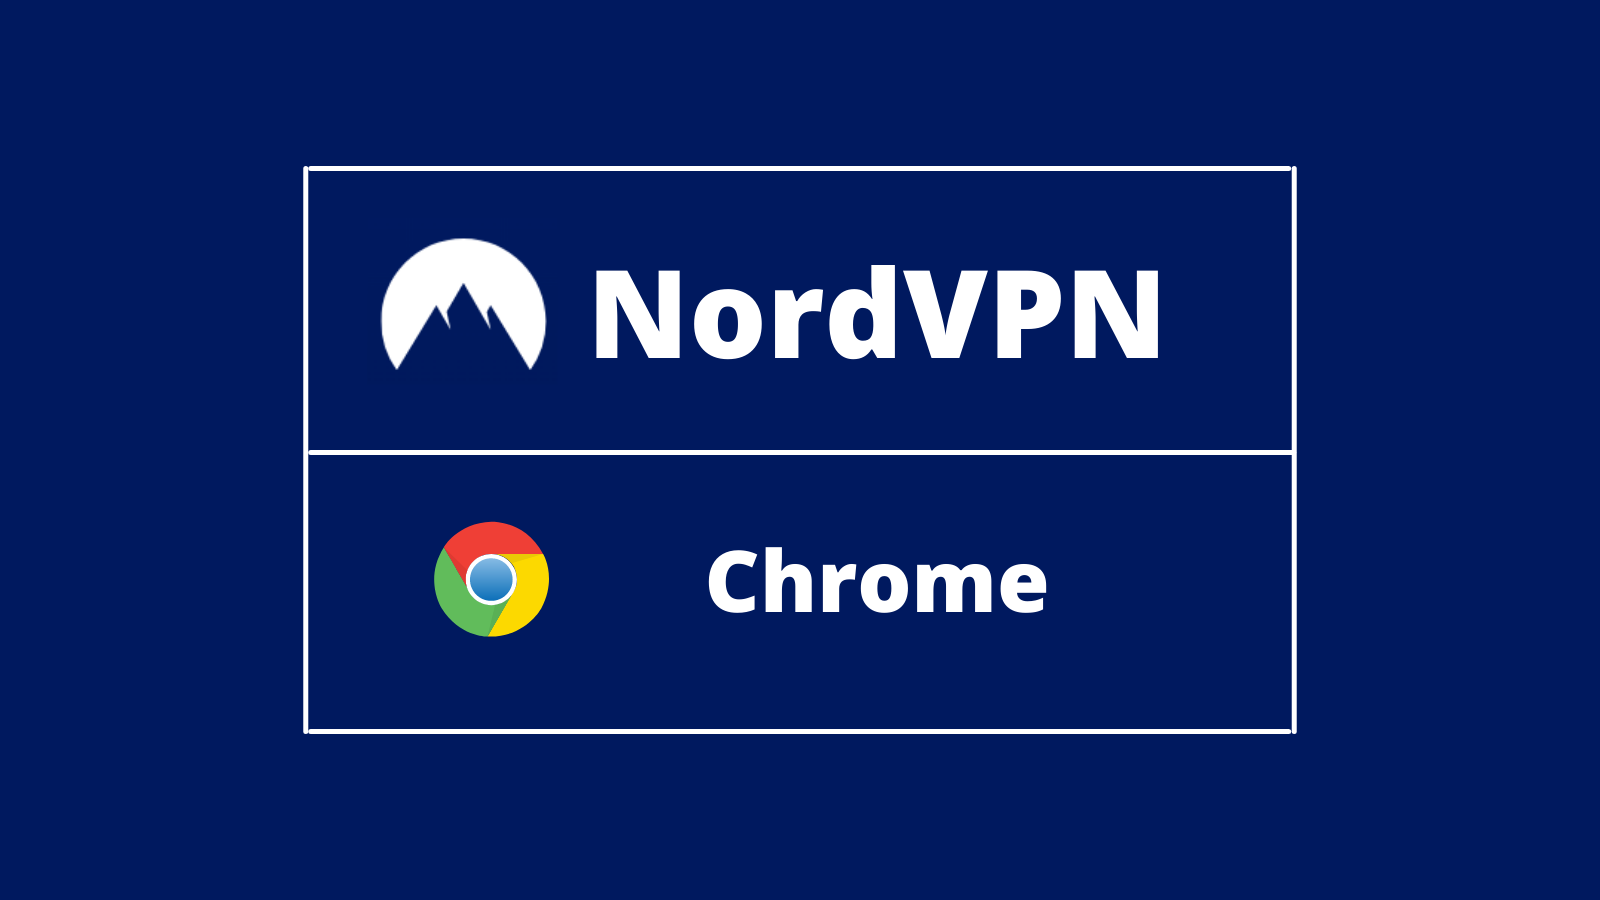 download nordvpn for chrome